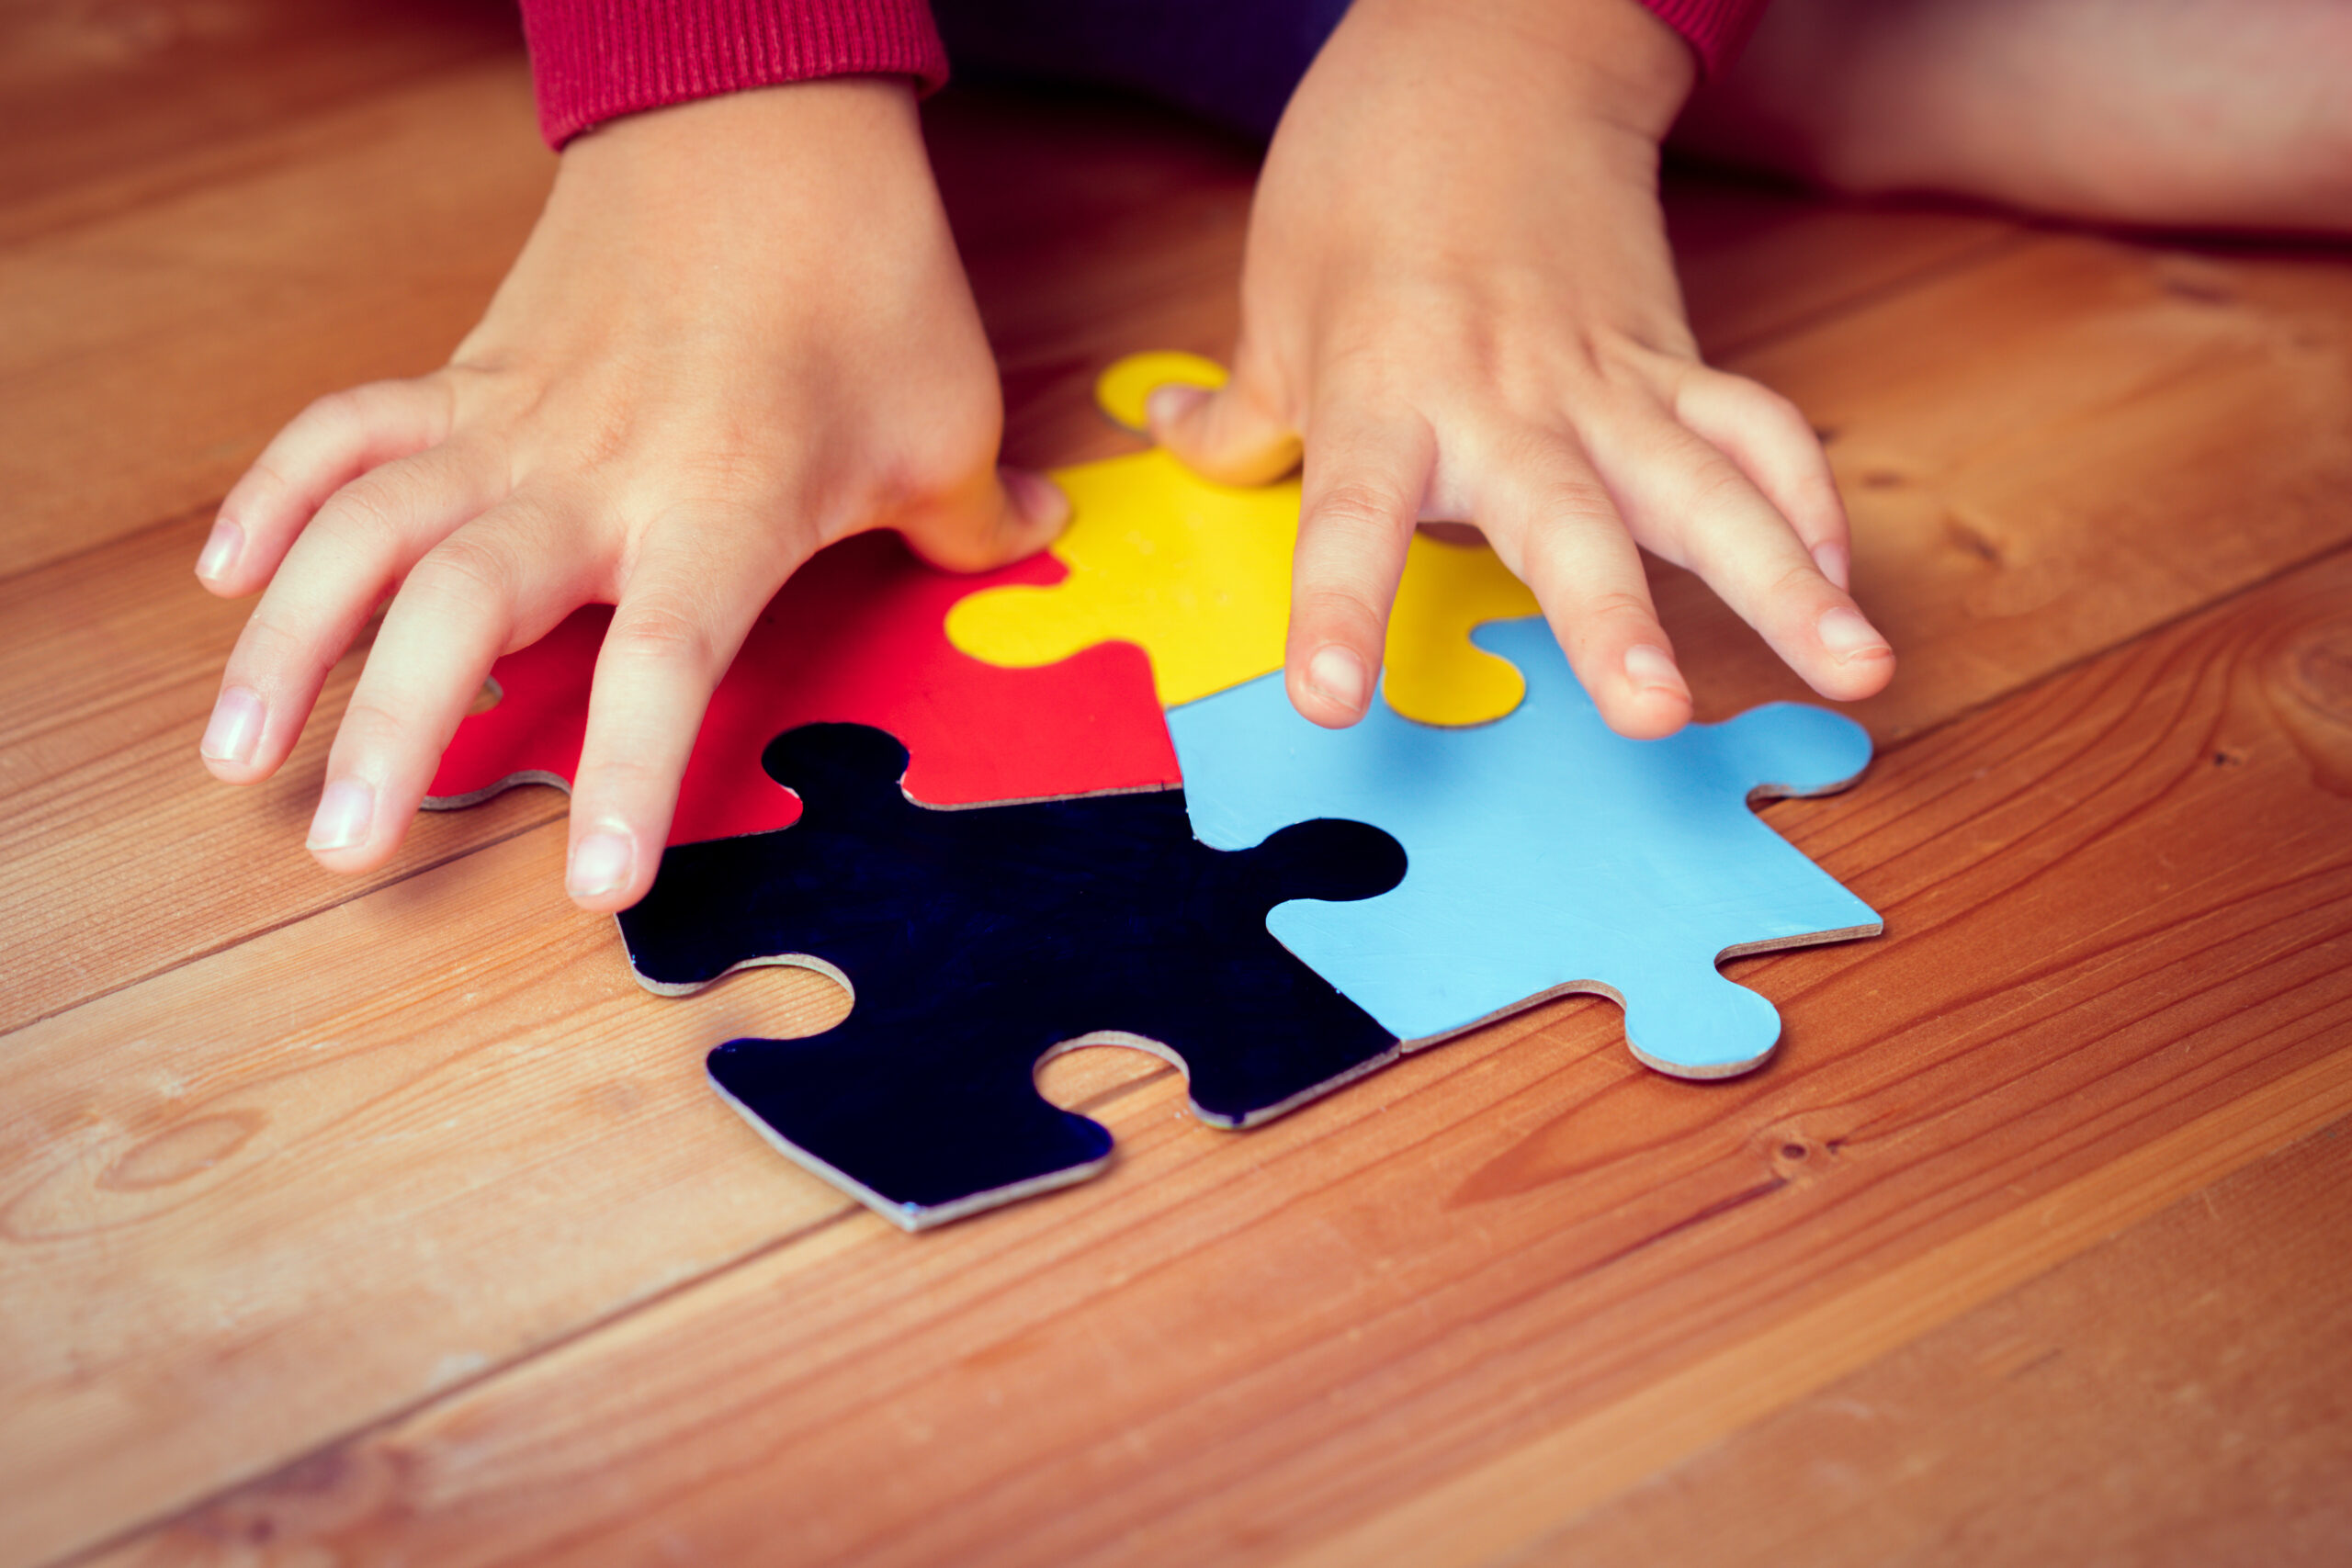 Dziecko z autyzmem ukłąda puzle na podłodze